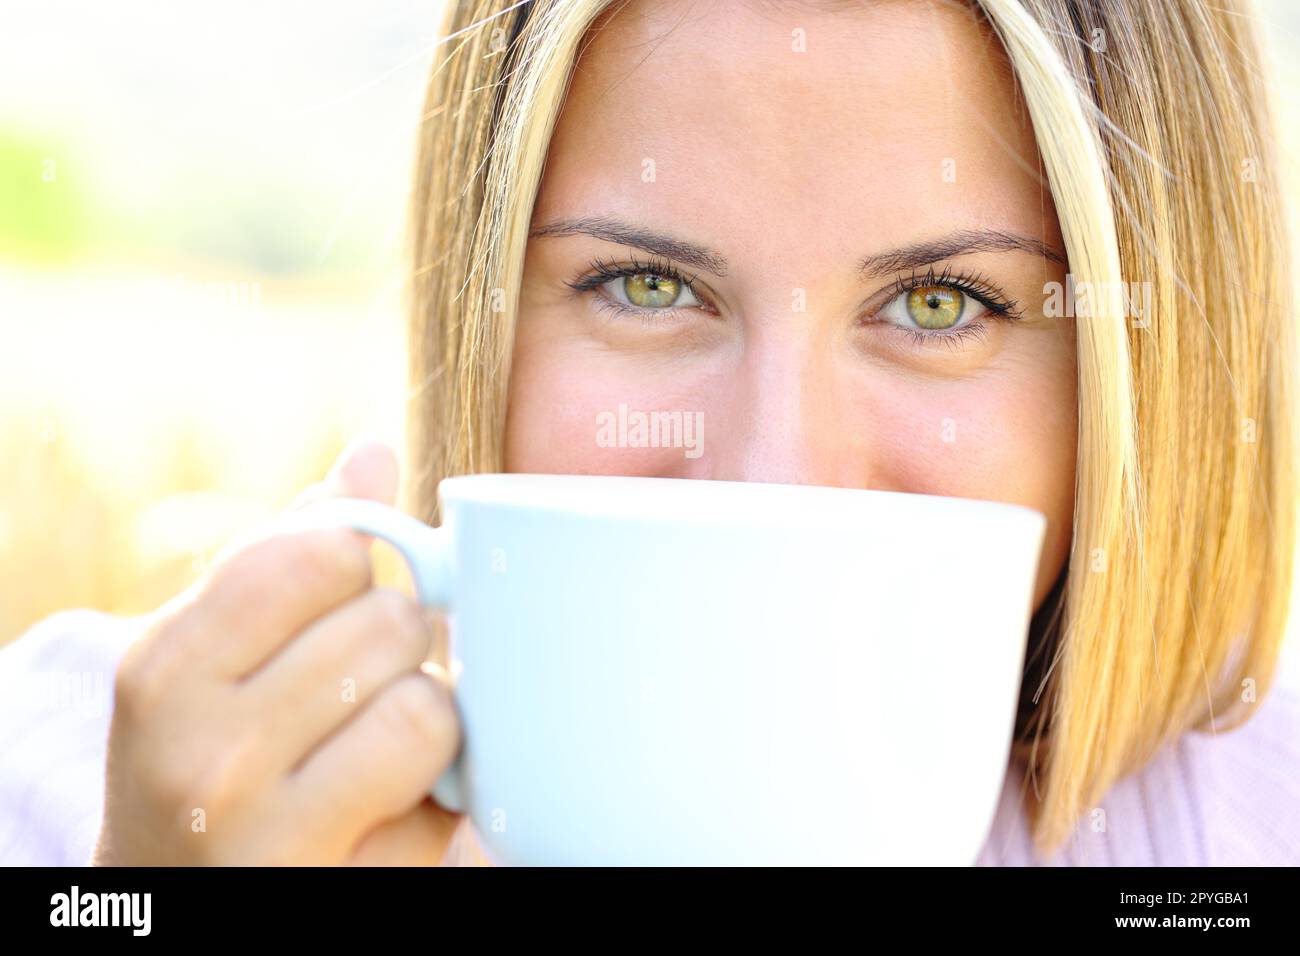 Adolescent heureux avec des yeux de beauté tenant une tasse de café Banque D'Images